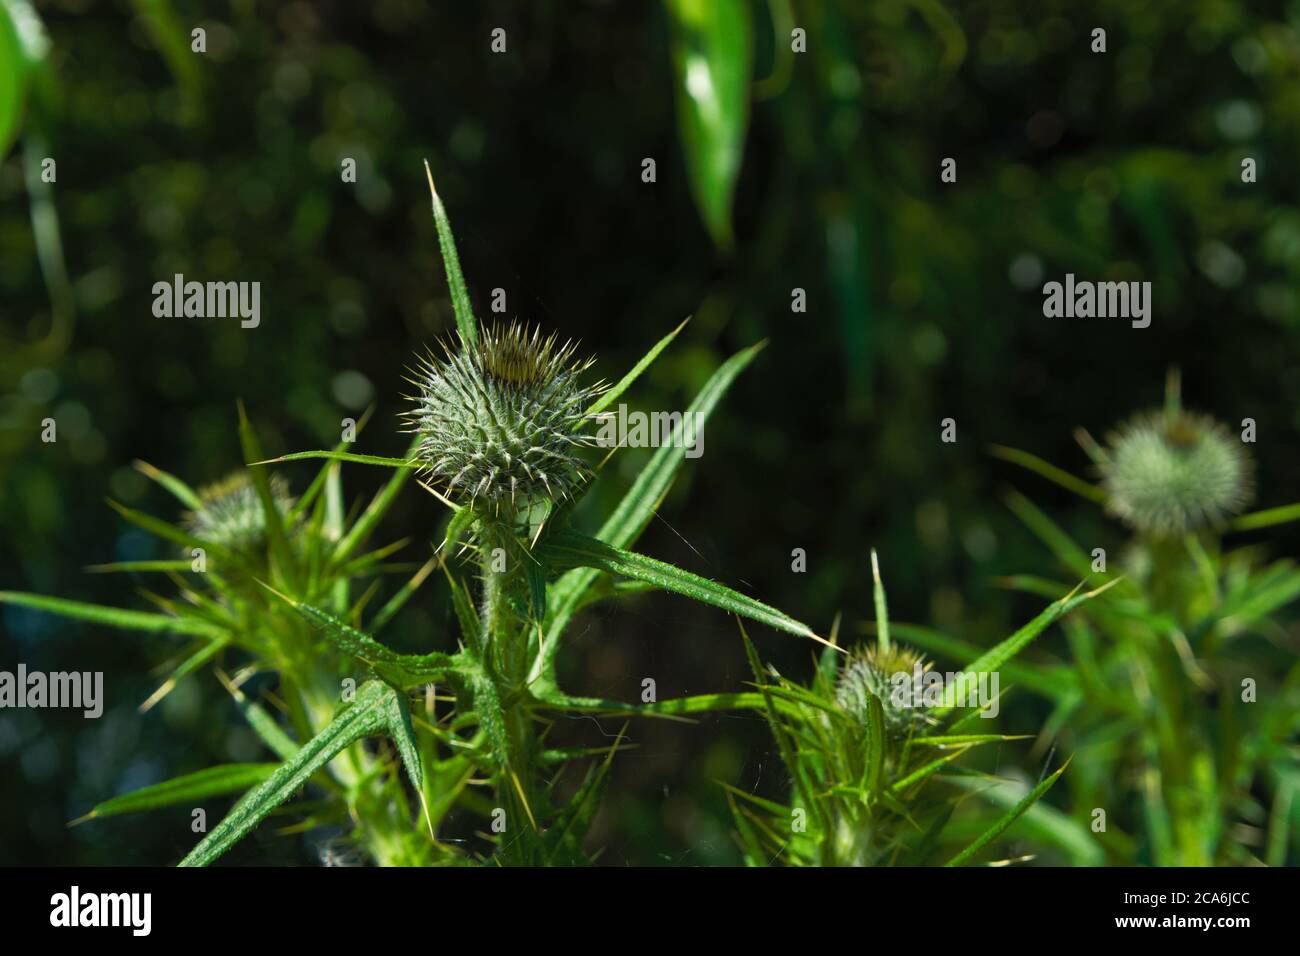 Nahaufnahme der Blattläppchen einer Speerdistel auch kwon als gewöhnliche Distel, wissenschaftlicher Name Cirsium vulgare Stockfoto